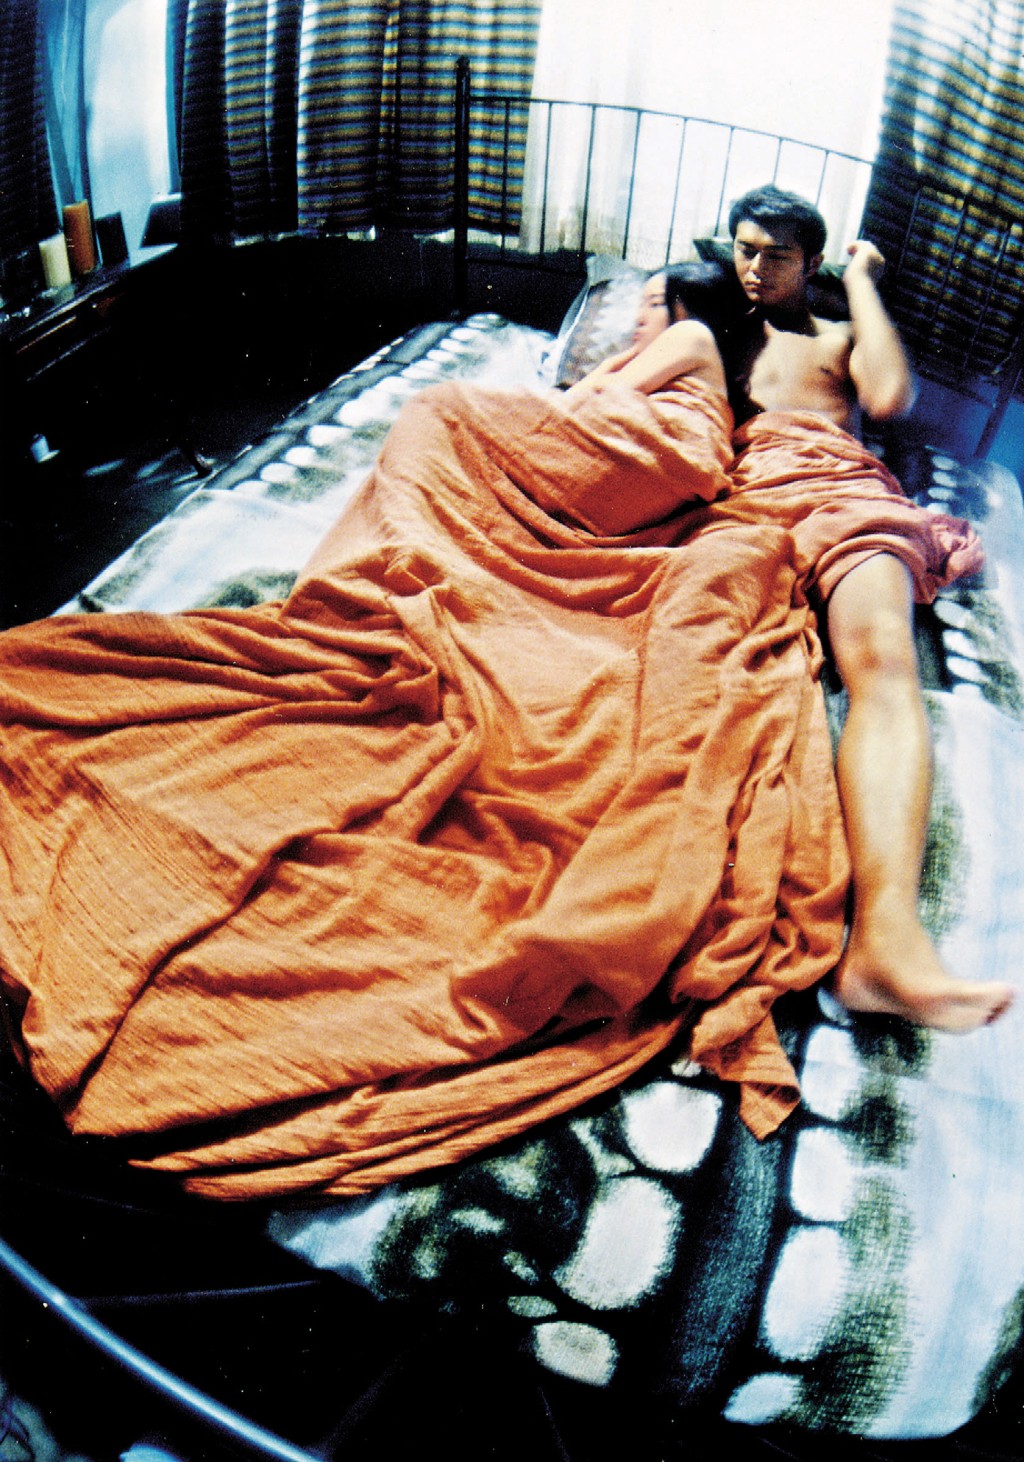 谷祖琳與古天樂在電影《野獸之瞳》有床上戲。